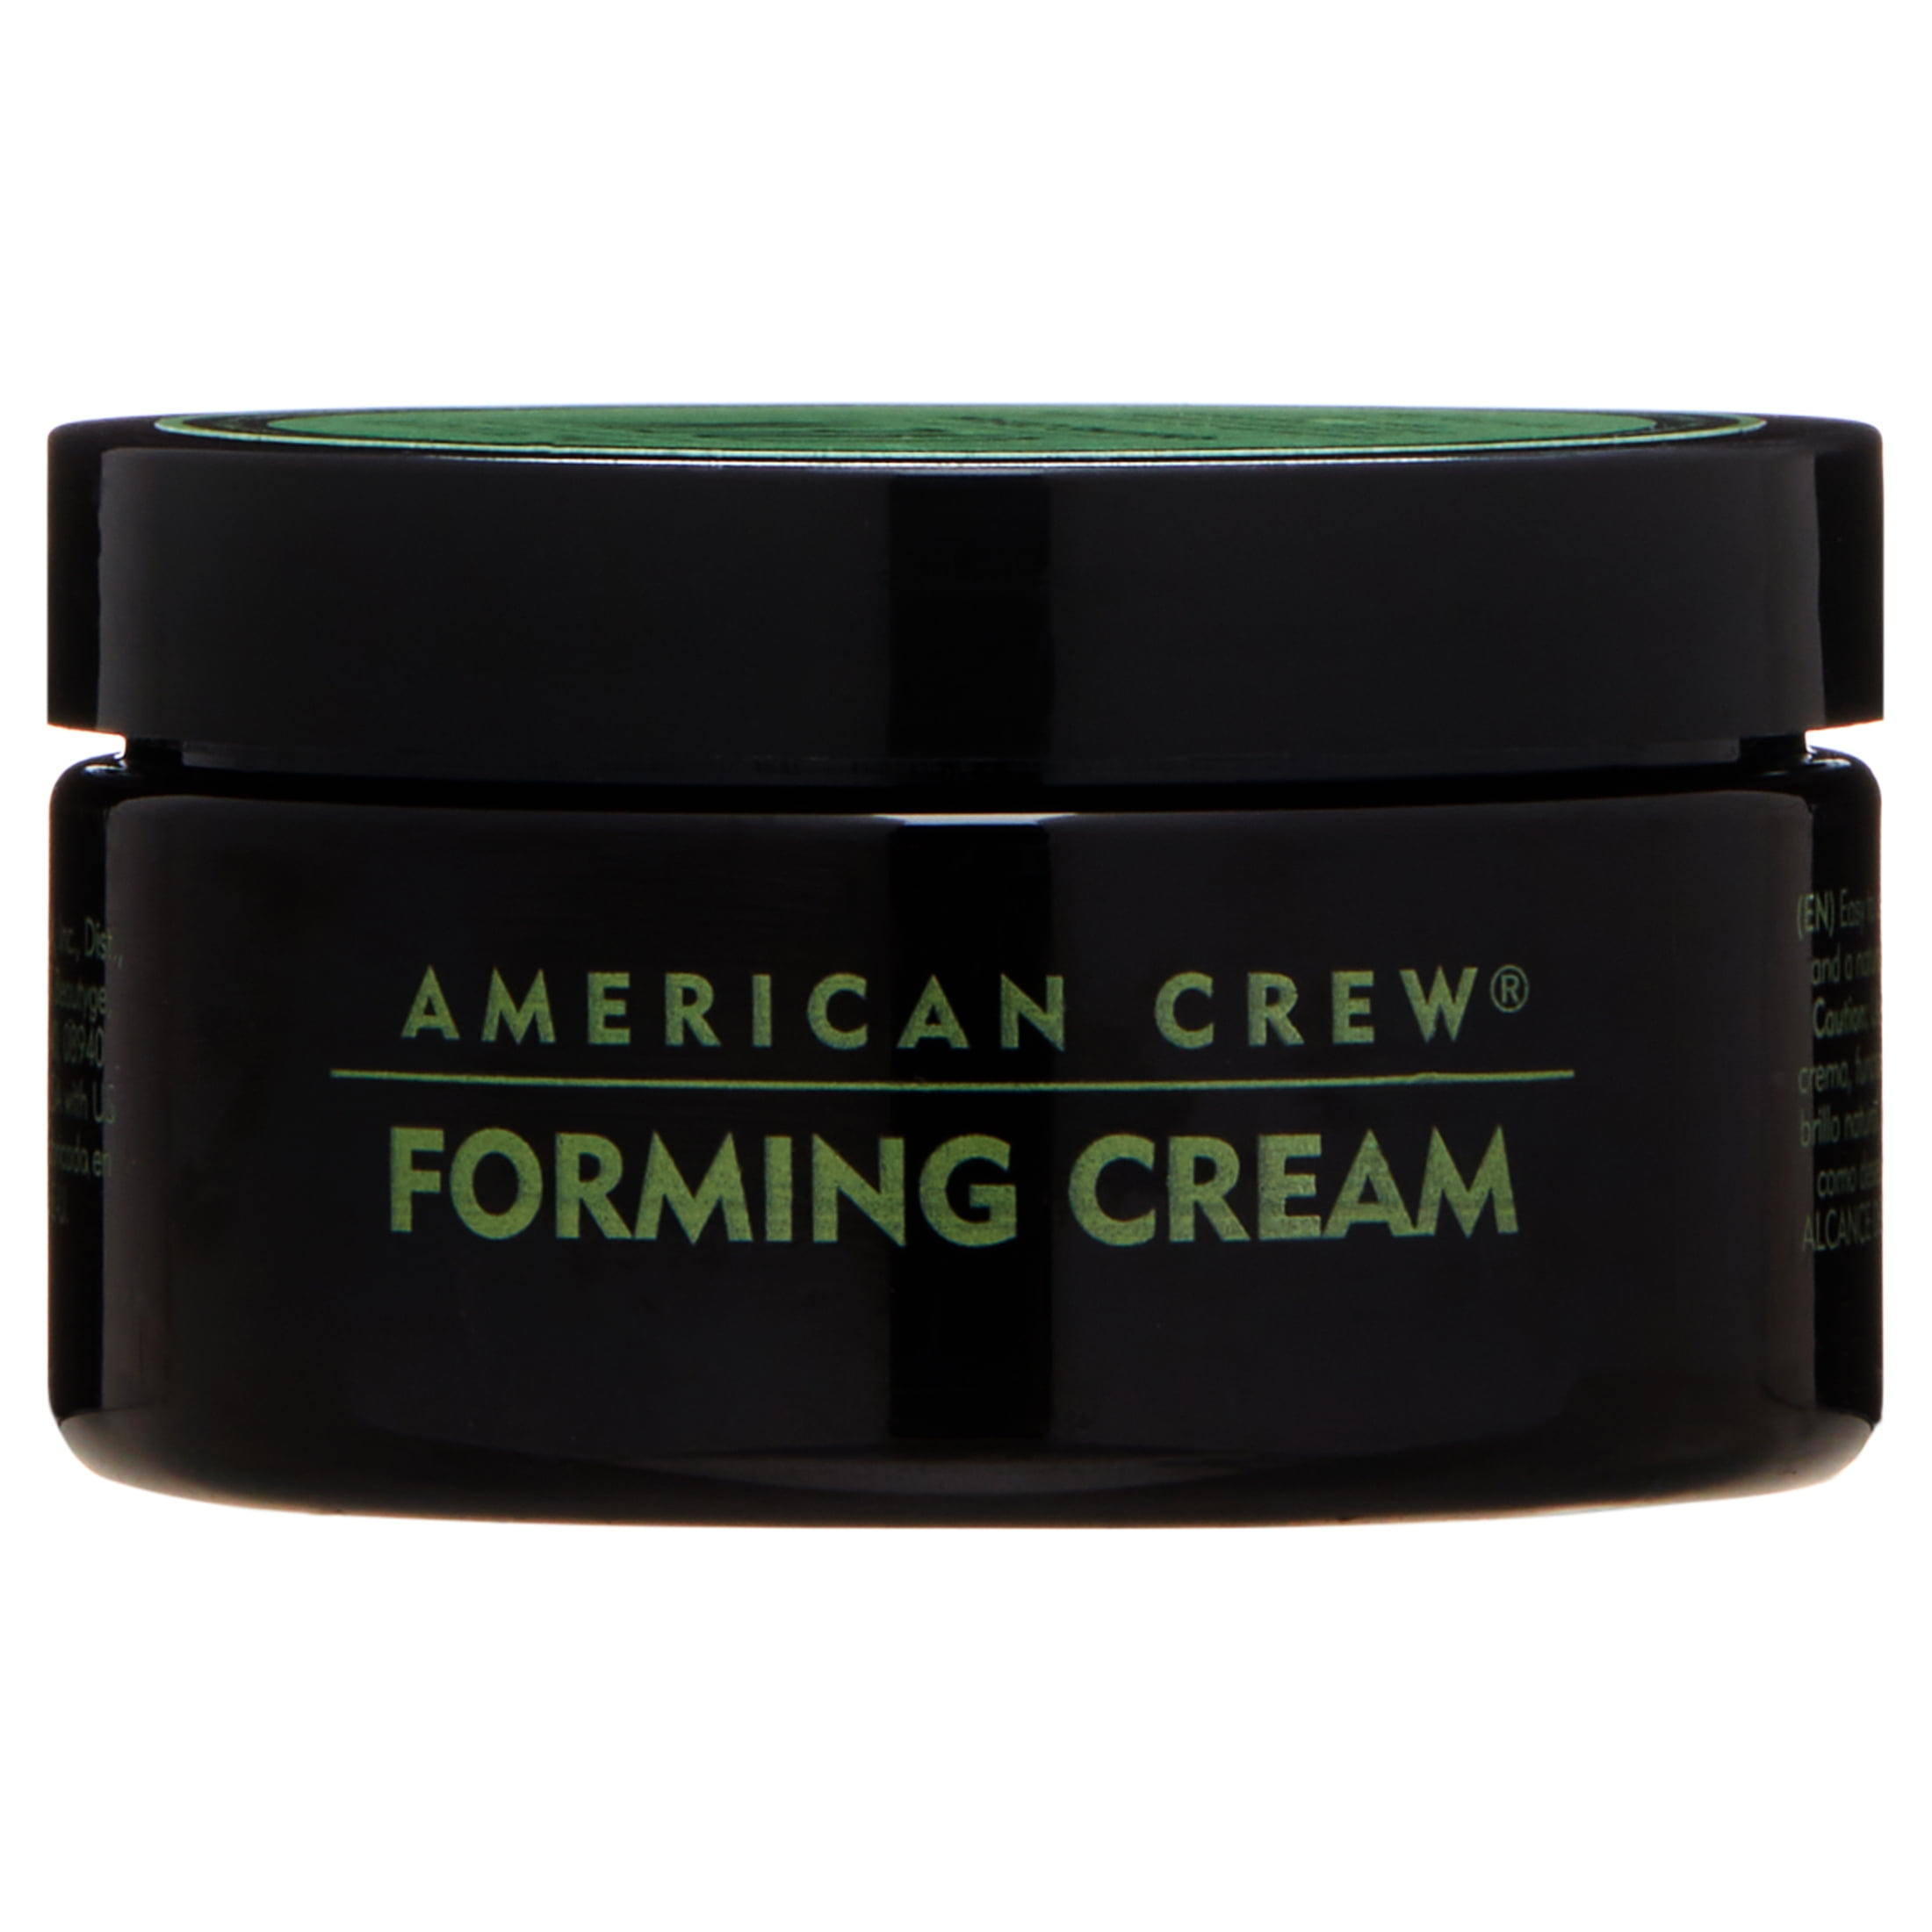 Forming Hold American Medium Cream, Crew oz 3